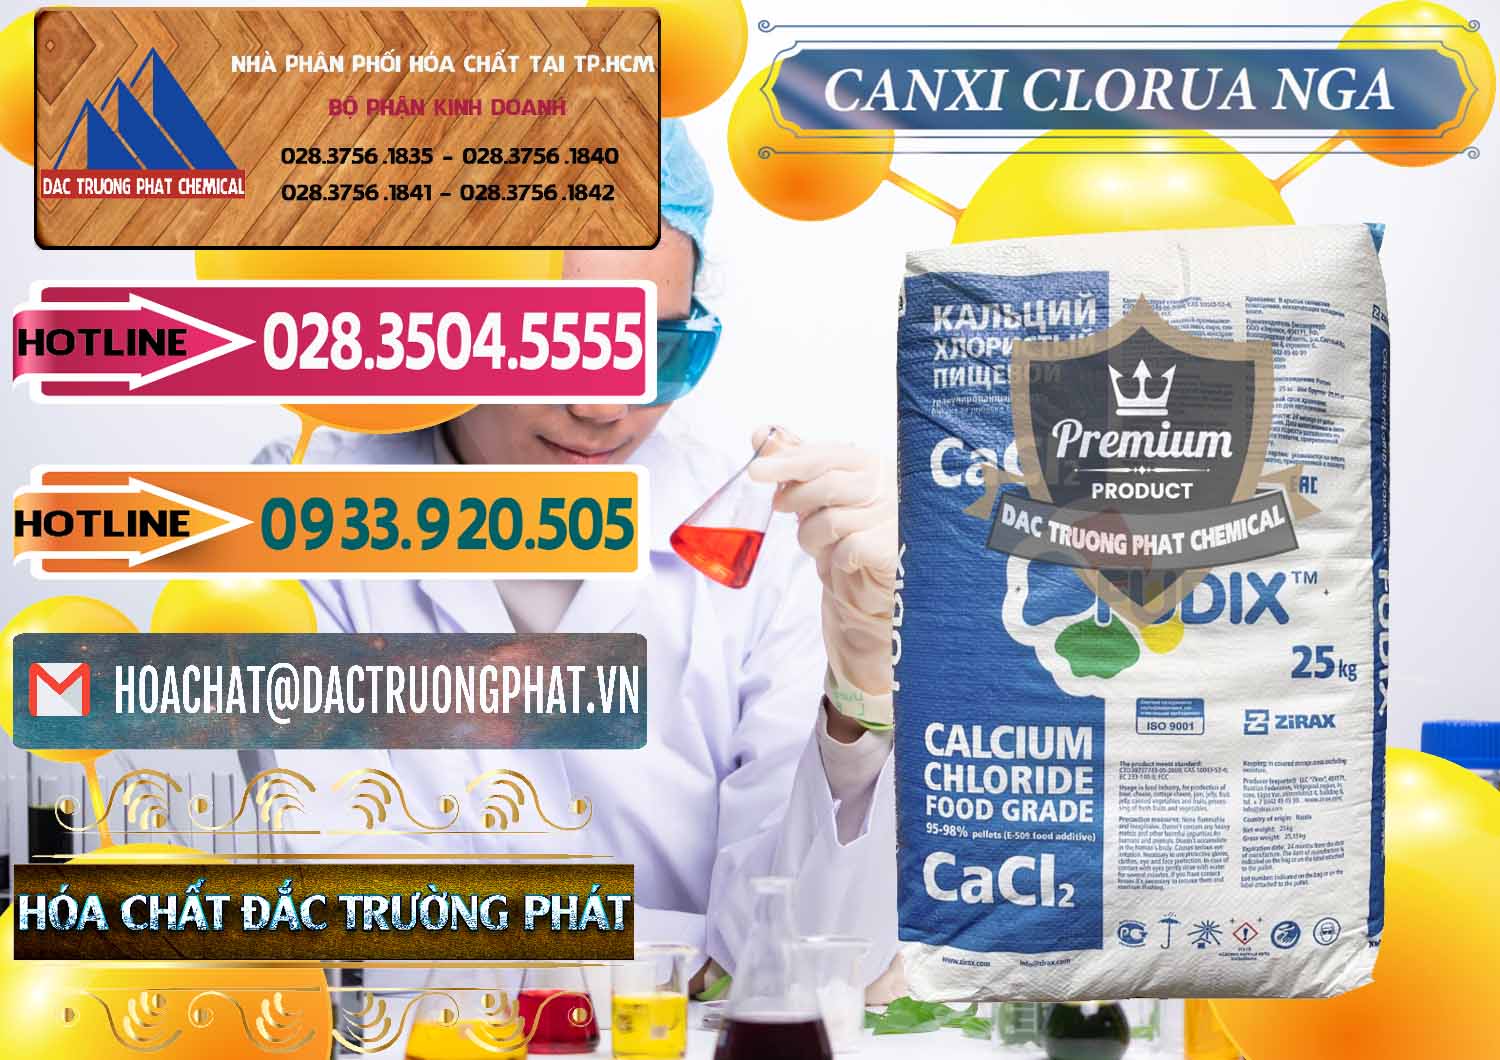 Nơi bán - cung cấp CaCl2 – Canxi Clorua Nga Russia - 0430 - Cty cung cấp và kinh doanh hóa chất tại TP.HCM - dactruongphat.vn